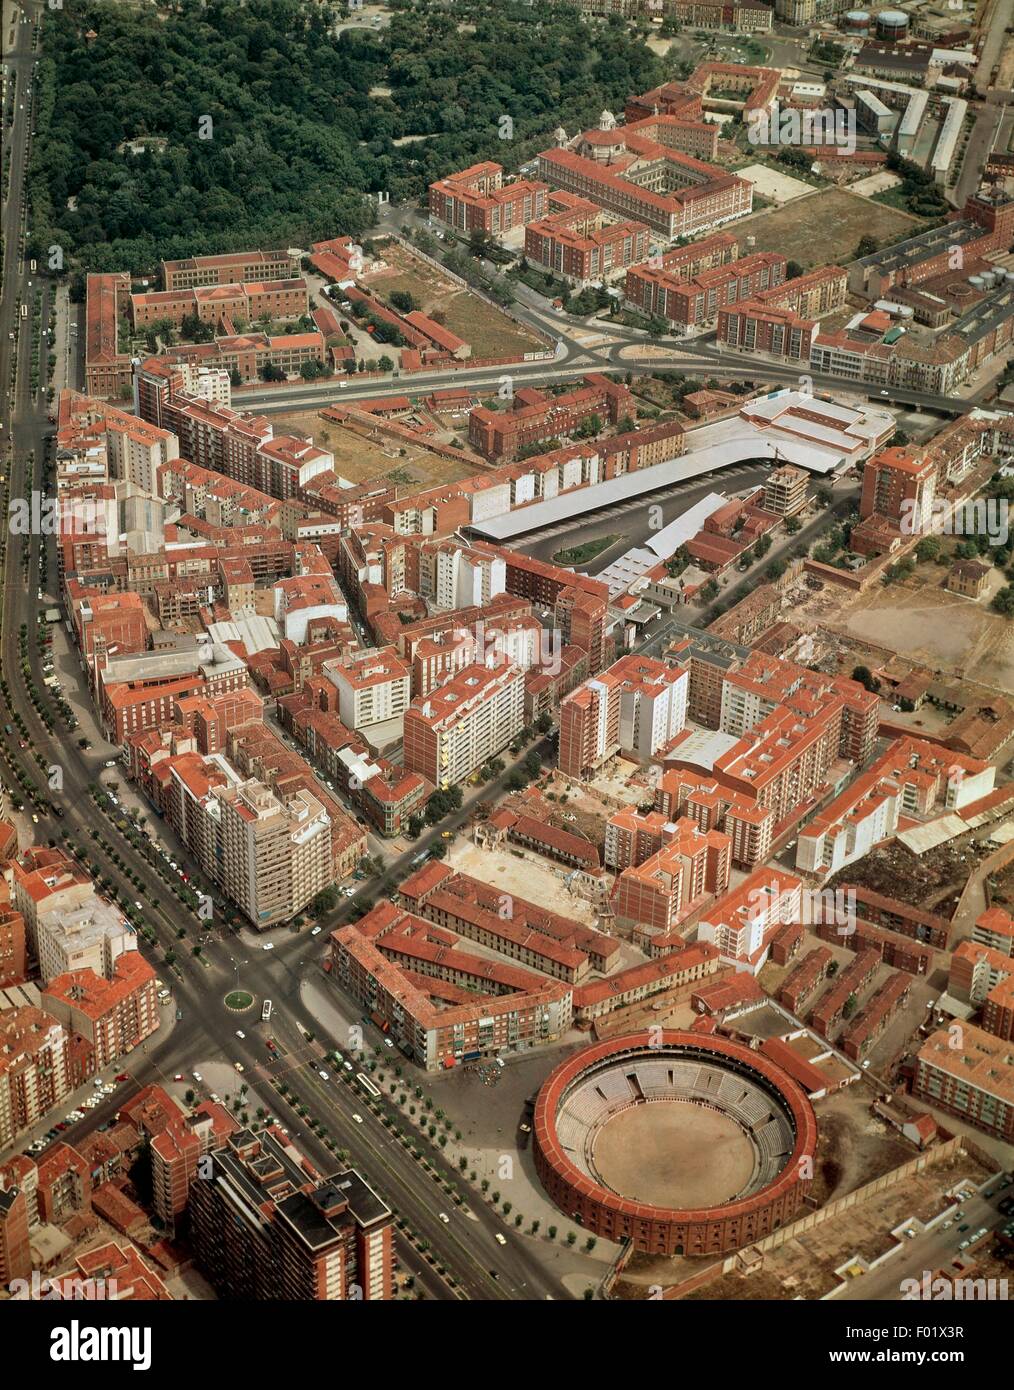 Aerial view of Valladolid - Castilla y Leon, Spain. Stock Photo